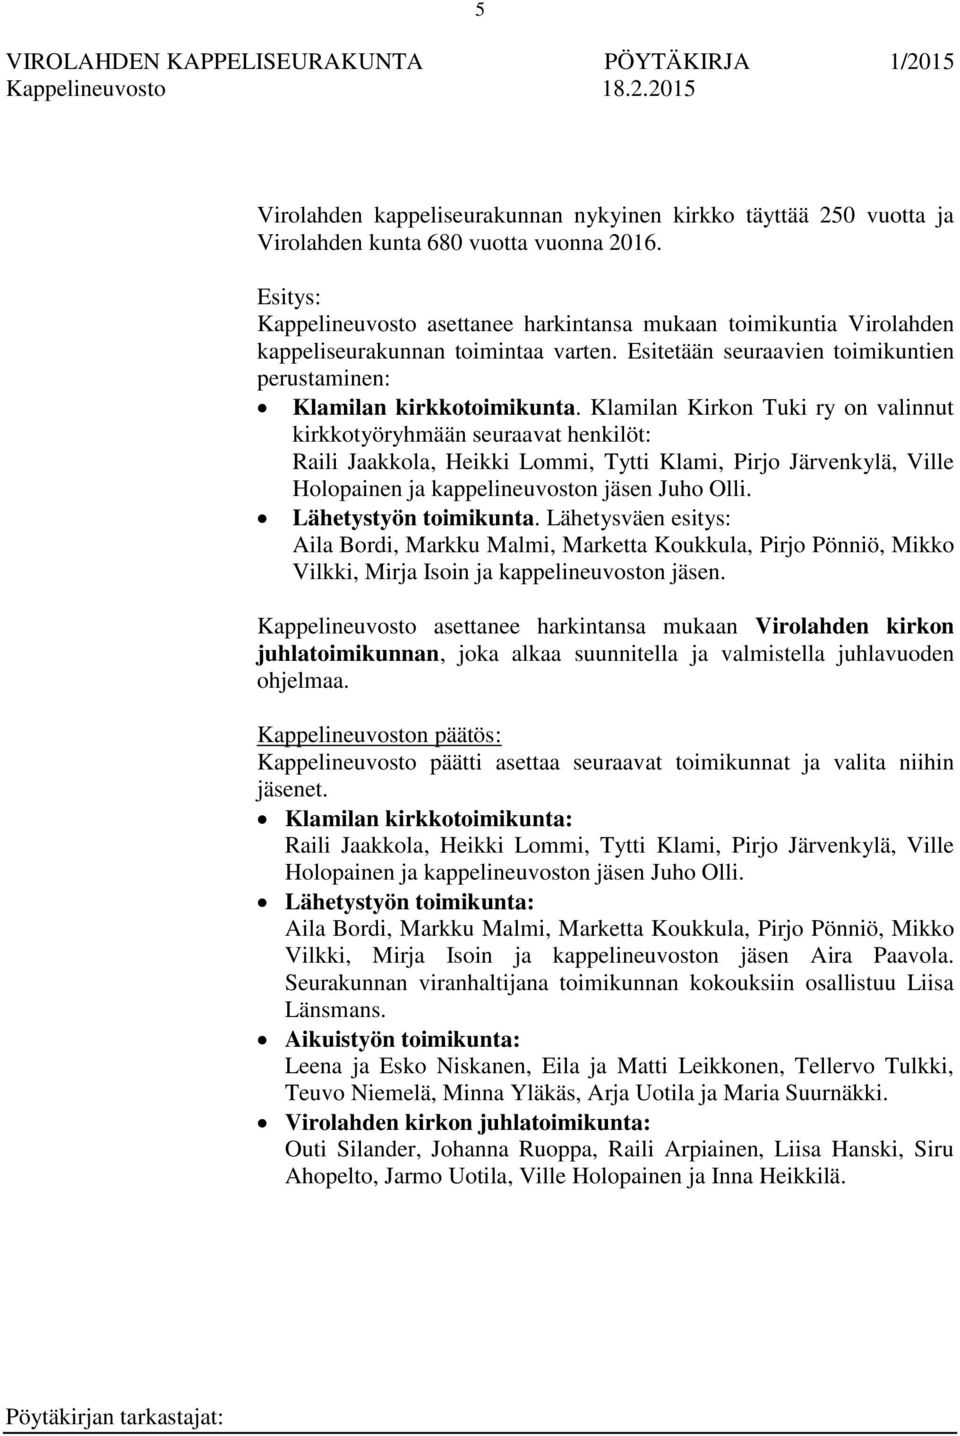 Klamilan Kirkon Tuki ry on valinnut kirkkotyöryhmään seuraavat henkilöt: Raili Jaakkola, Heikki Lommi, Tytti Klami, Pirjo Järvenkylä, Ville Holopainen ja kappelineuvoston jäsen Juho Olli.